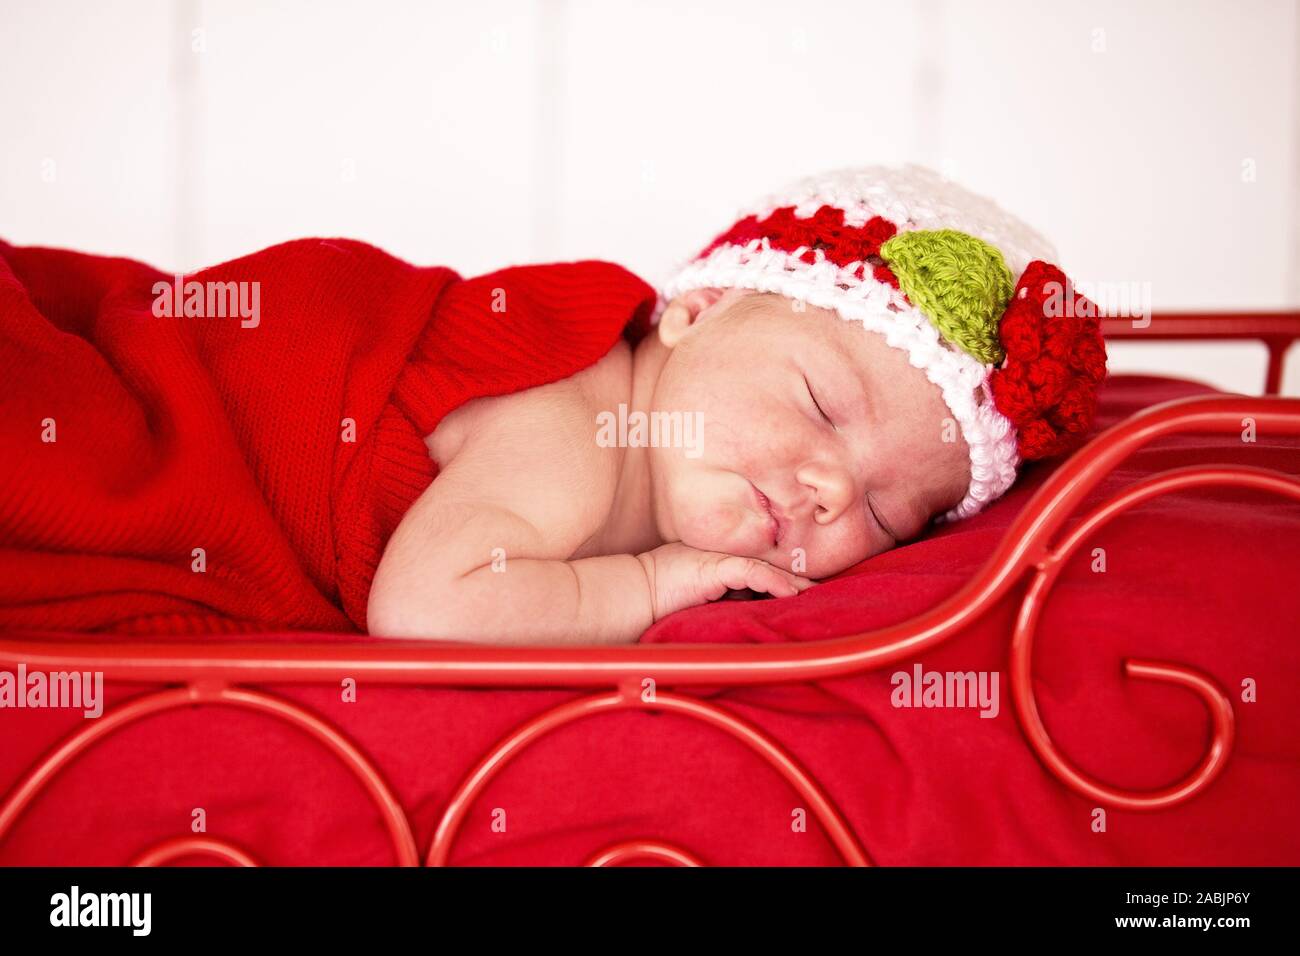 Mackay, Queensland, Australien - August 2014: Neugeborene Fotografie von  einem Baby Mädchen friedlich schlafend in einem roten Bett unter einer roten  Decke Stockfotografie - Alamy